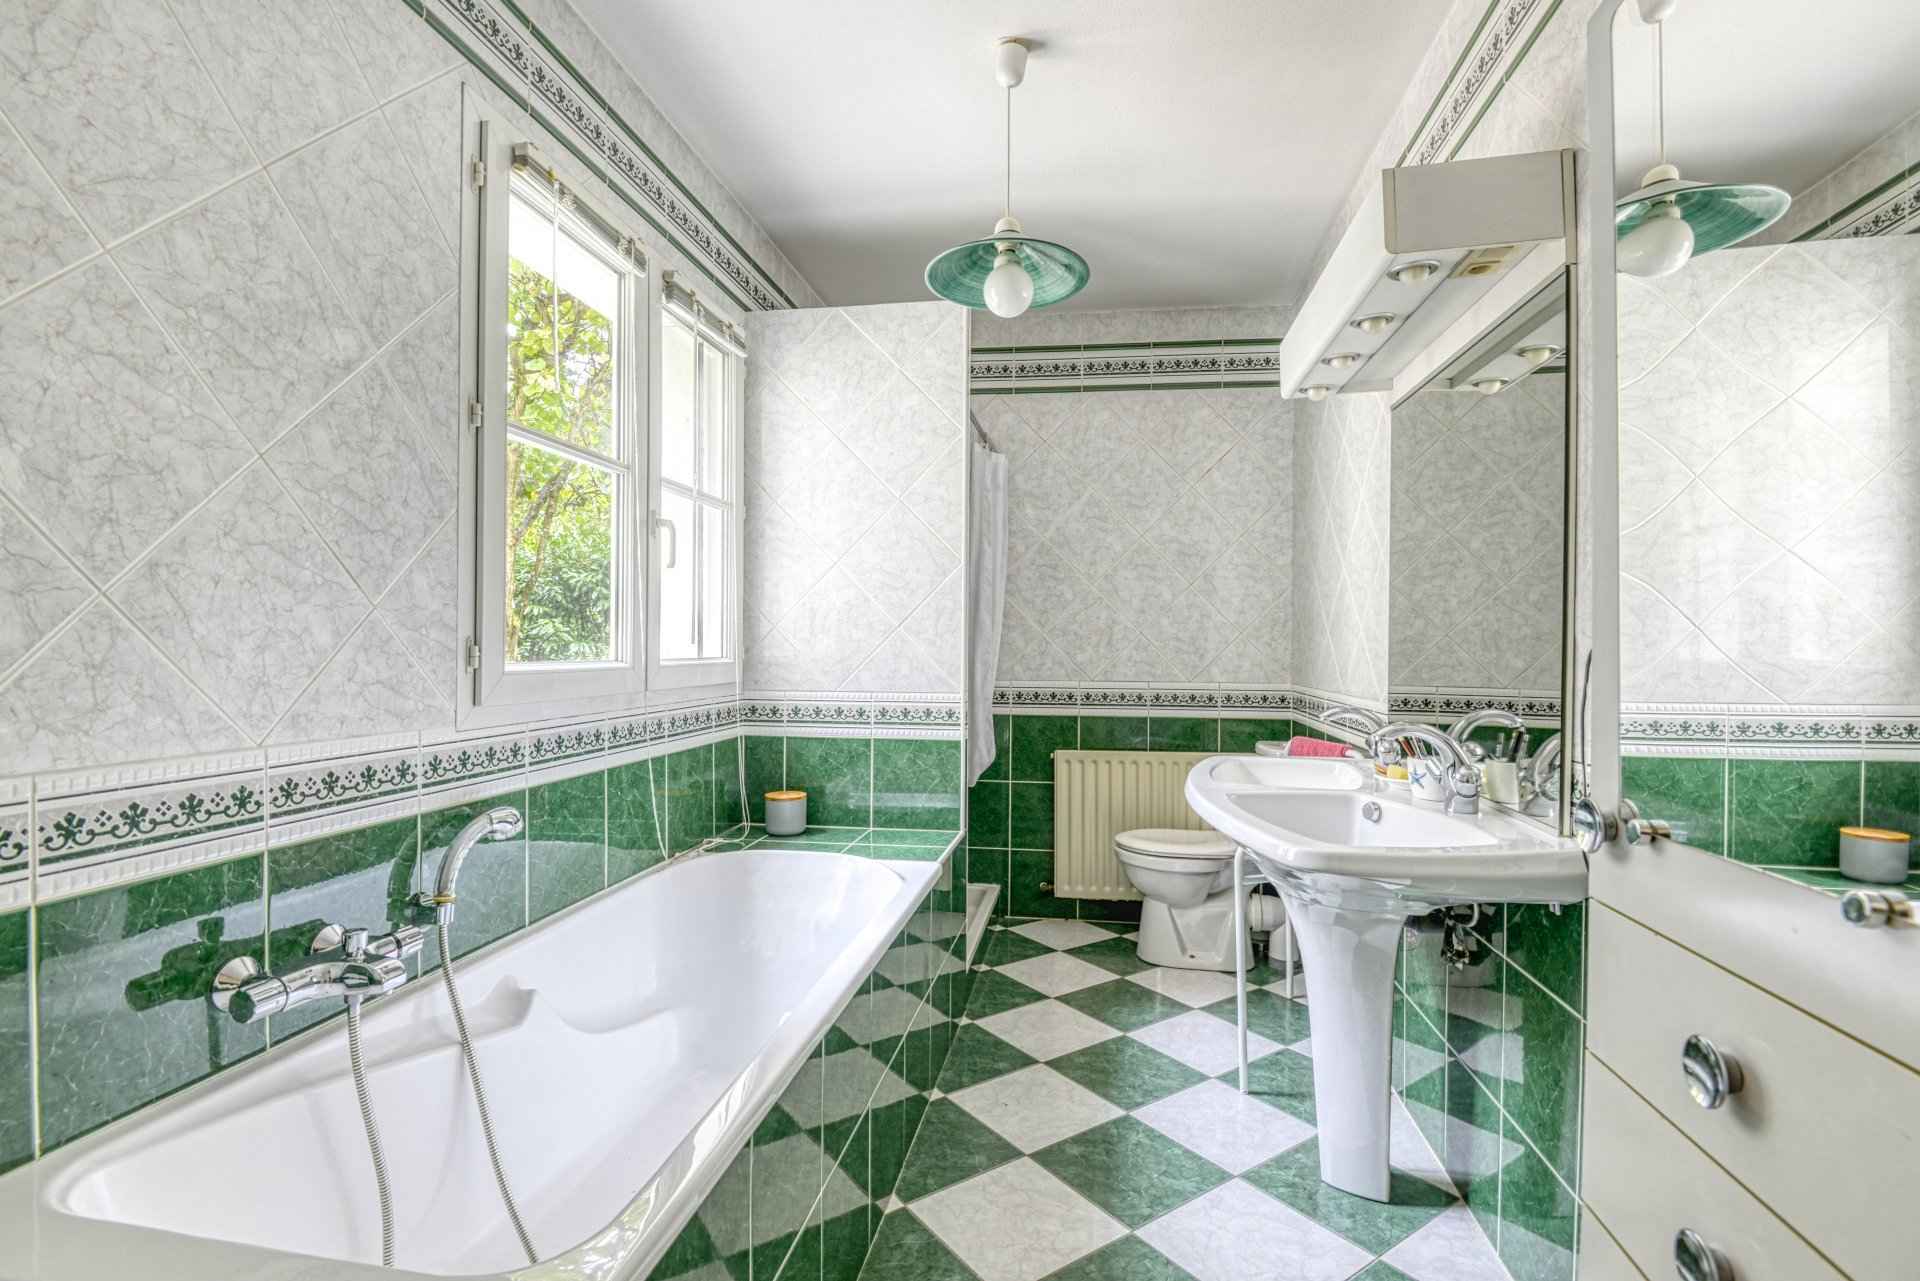 Salle de bains double vasque à Nantes